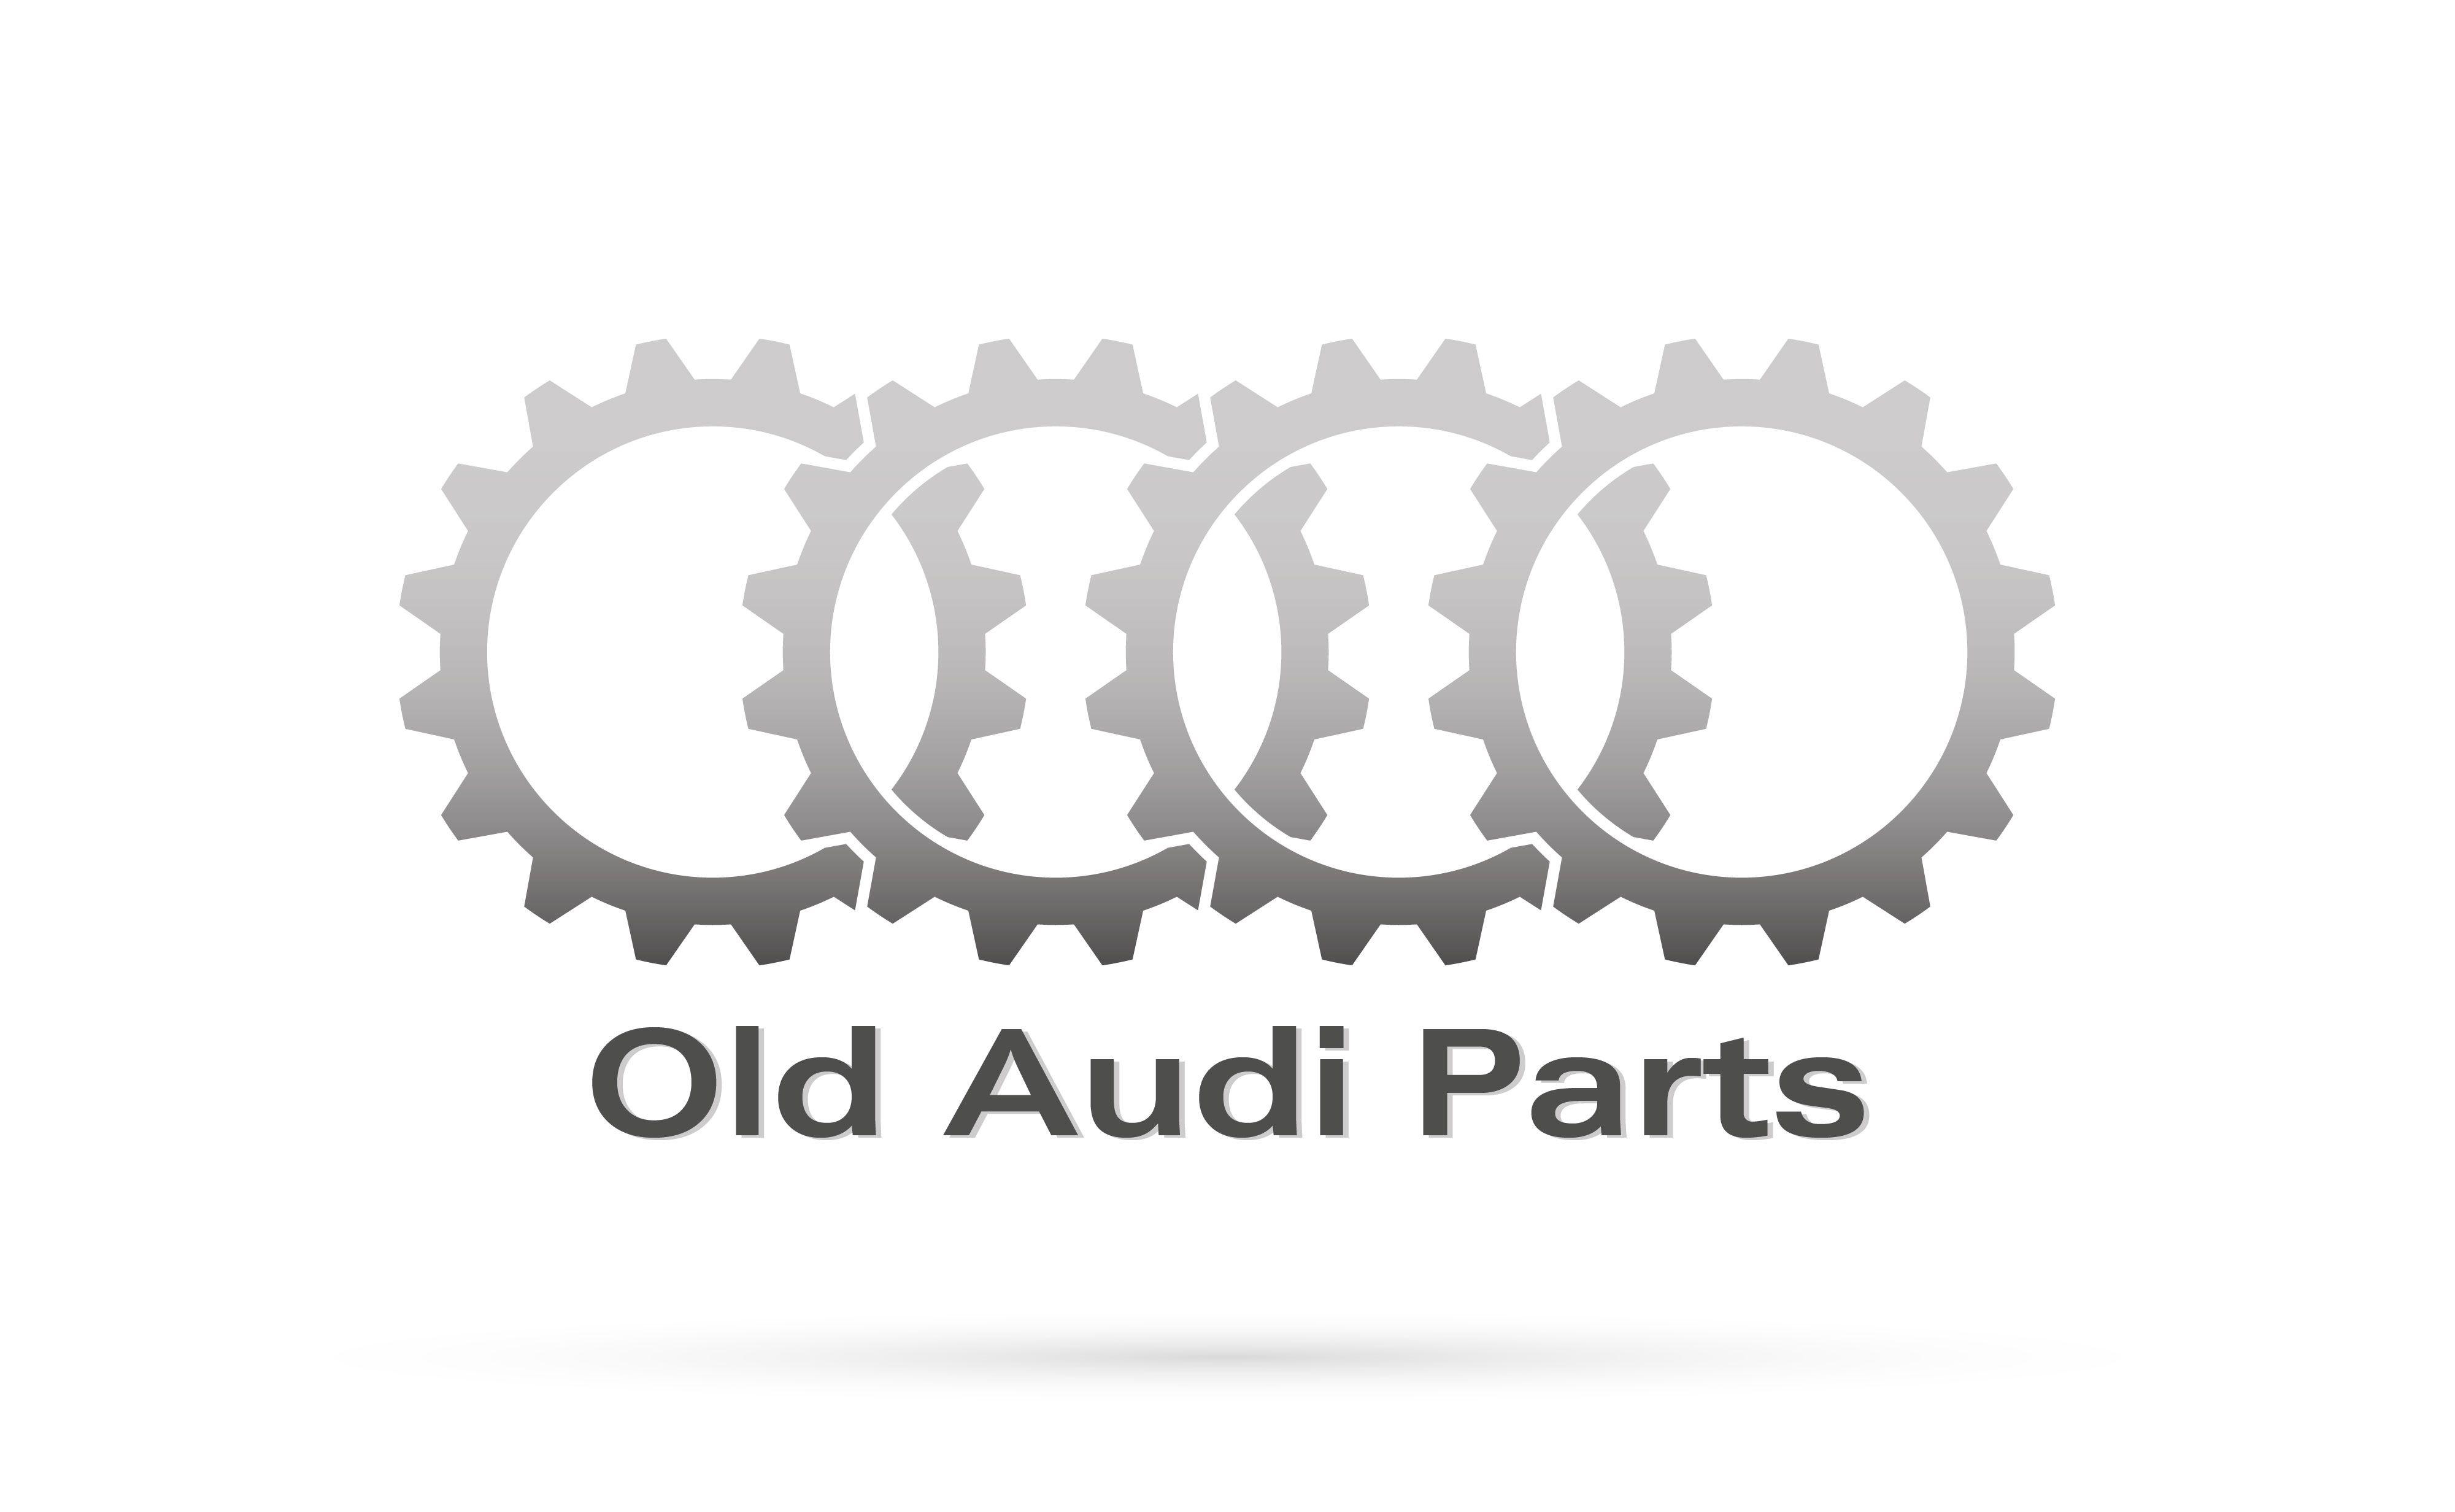 Old Audi Logo - old audi parts – SIGGIBAL｜Digital Designer